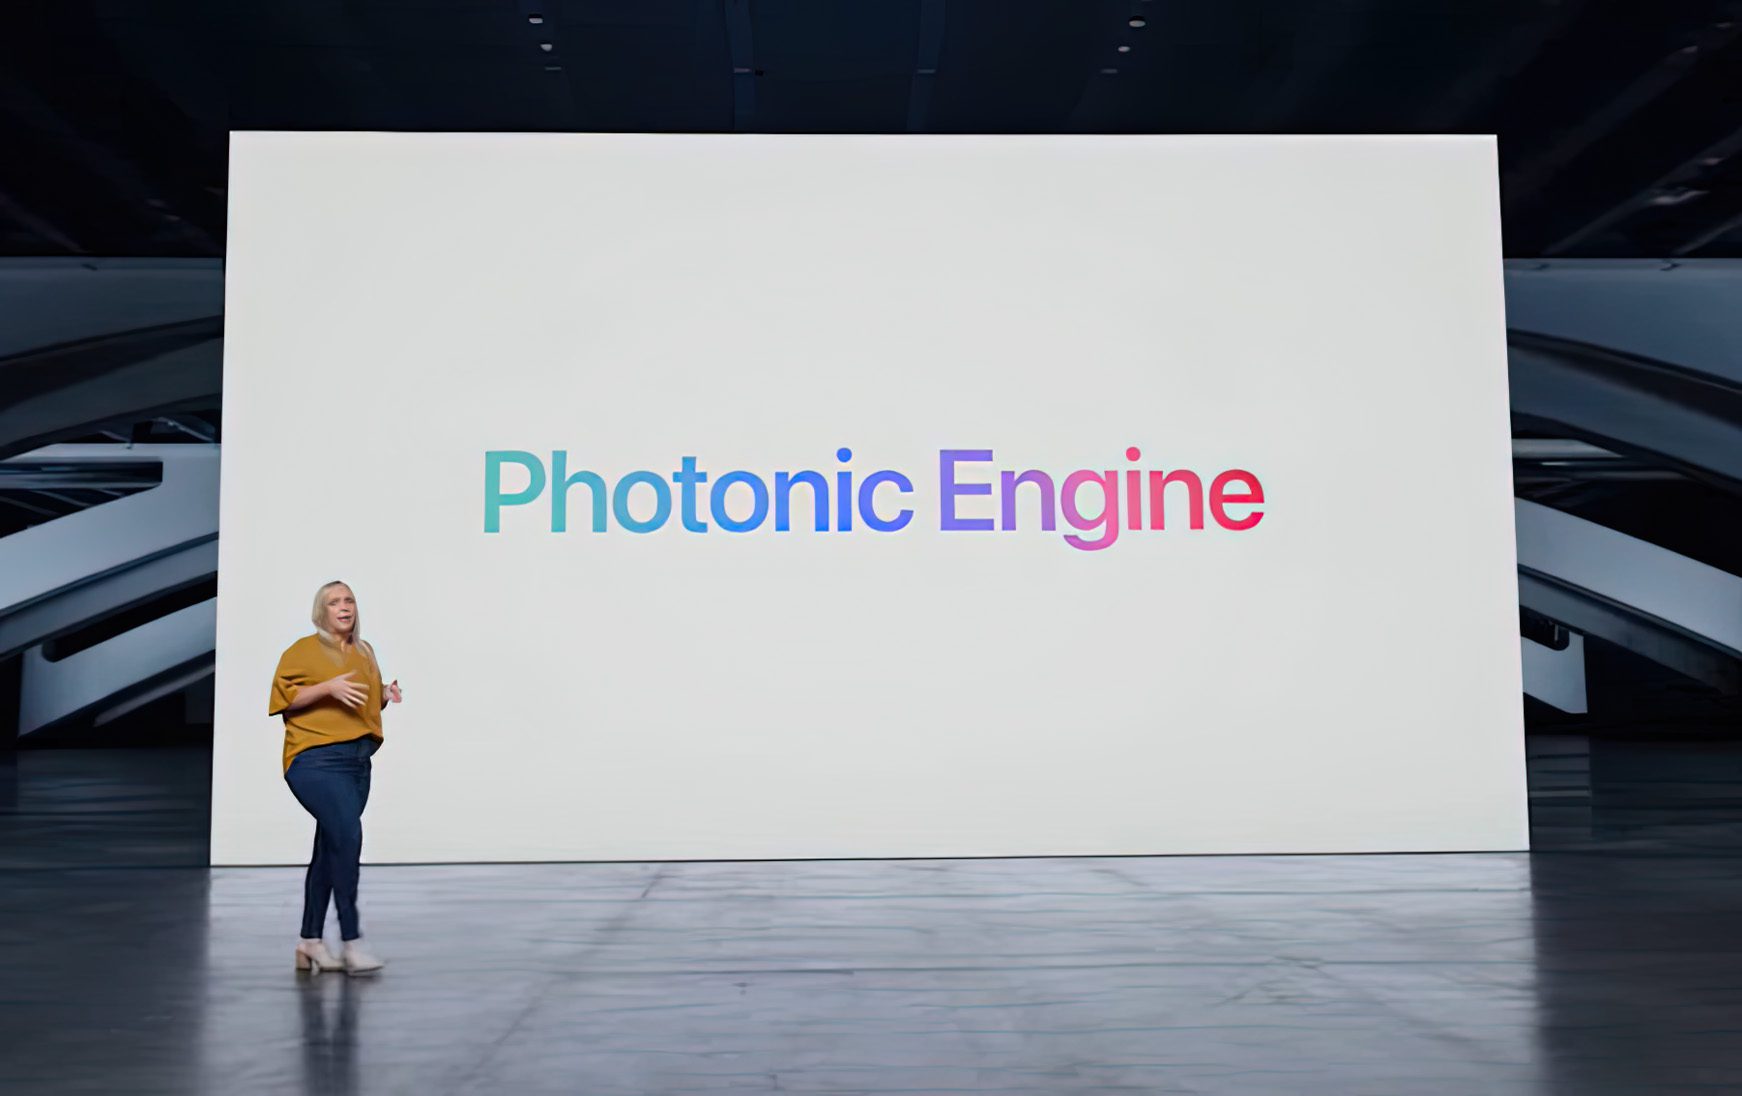 Die Photonic Engine ist ein Feature, das auf der iPhone-14-Keynote vorgestellt wurde. Wie es funktioniert, wird hier erklärt.